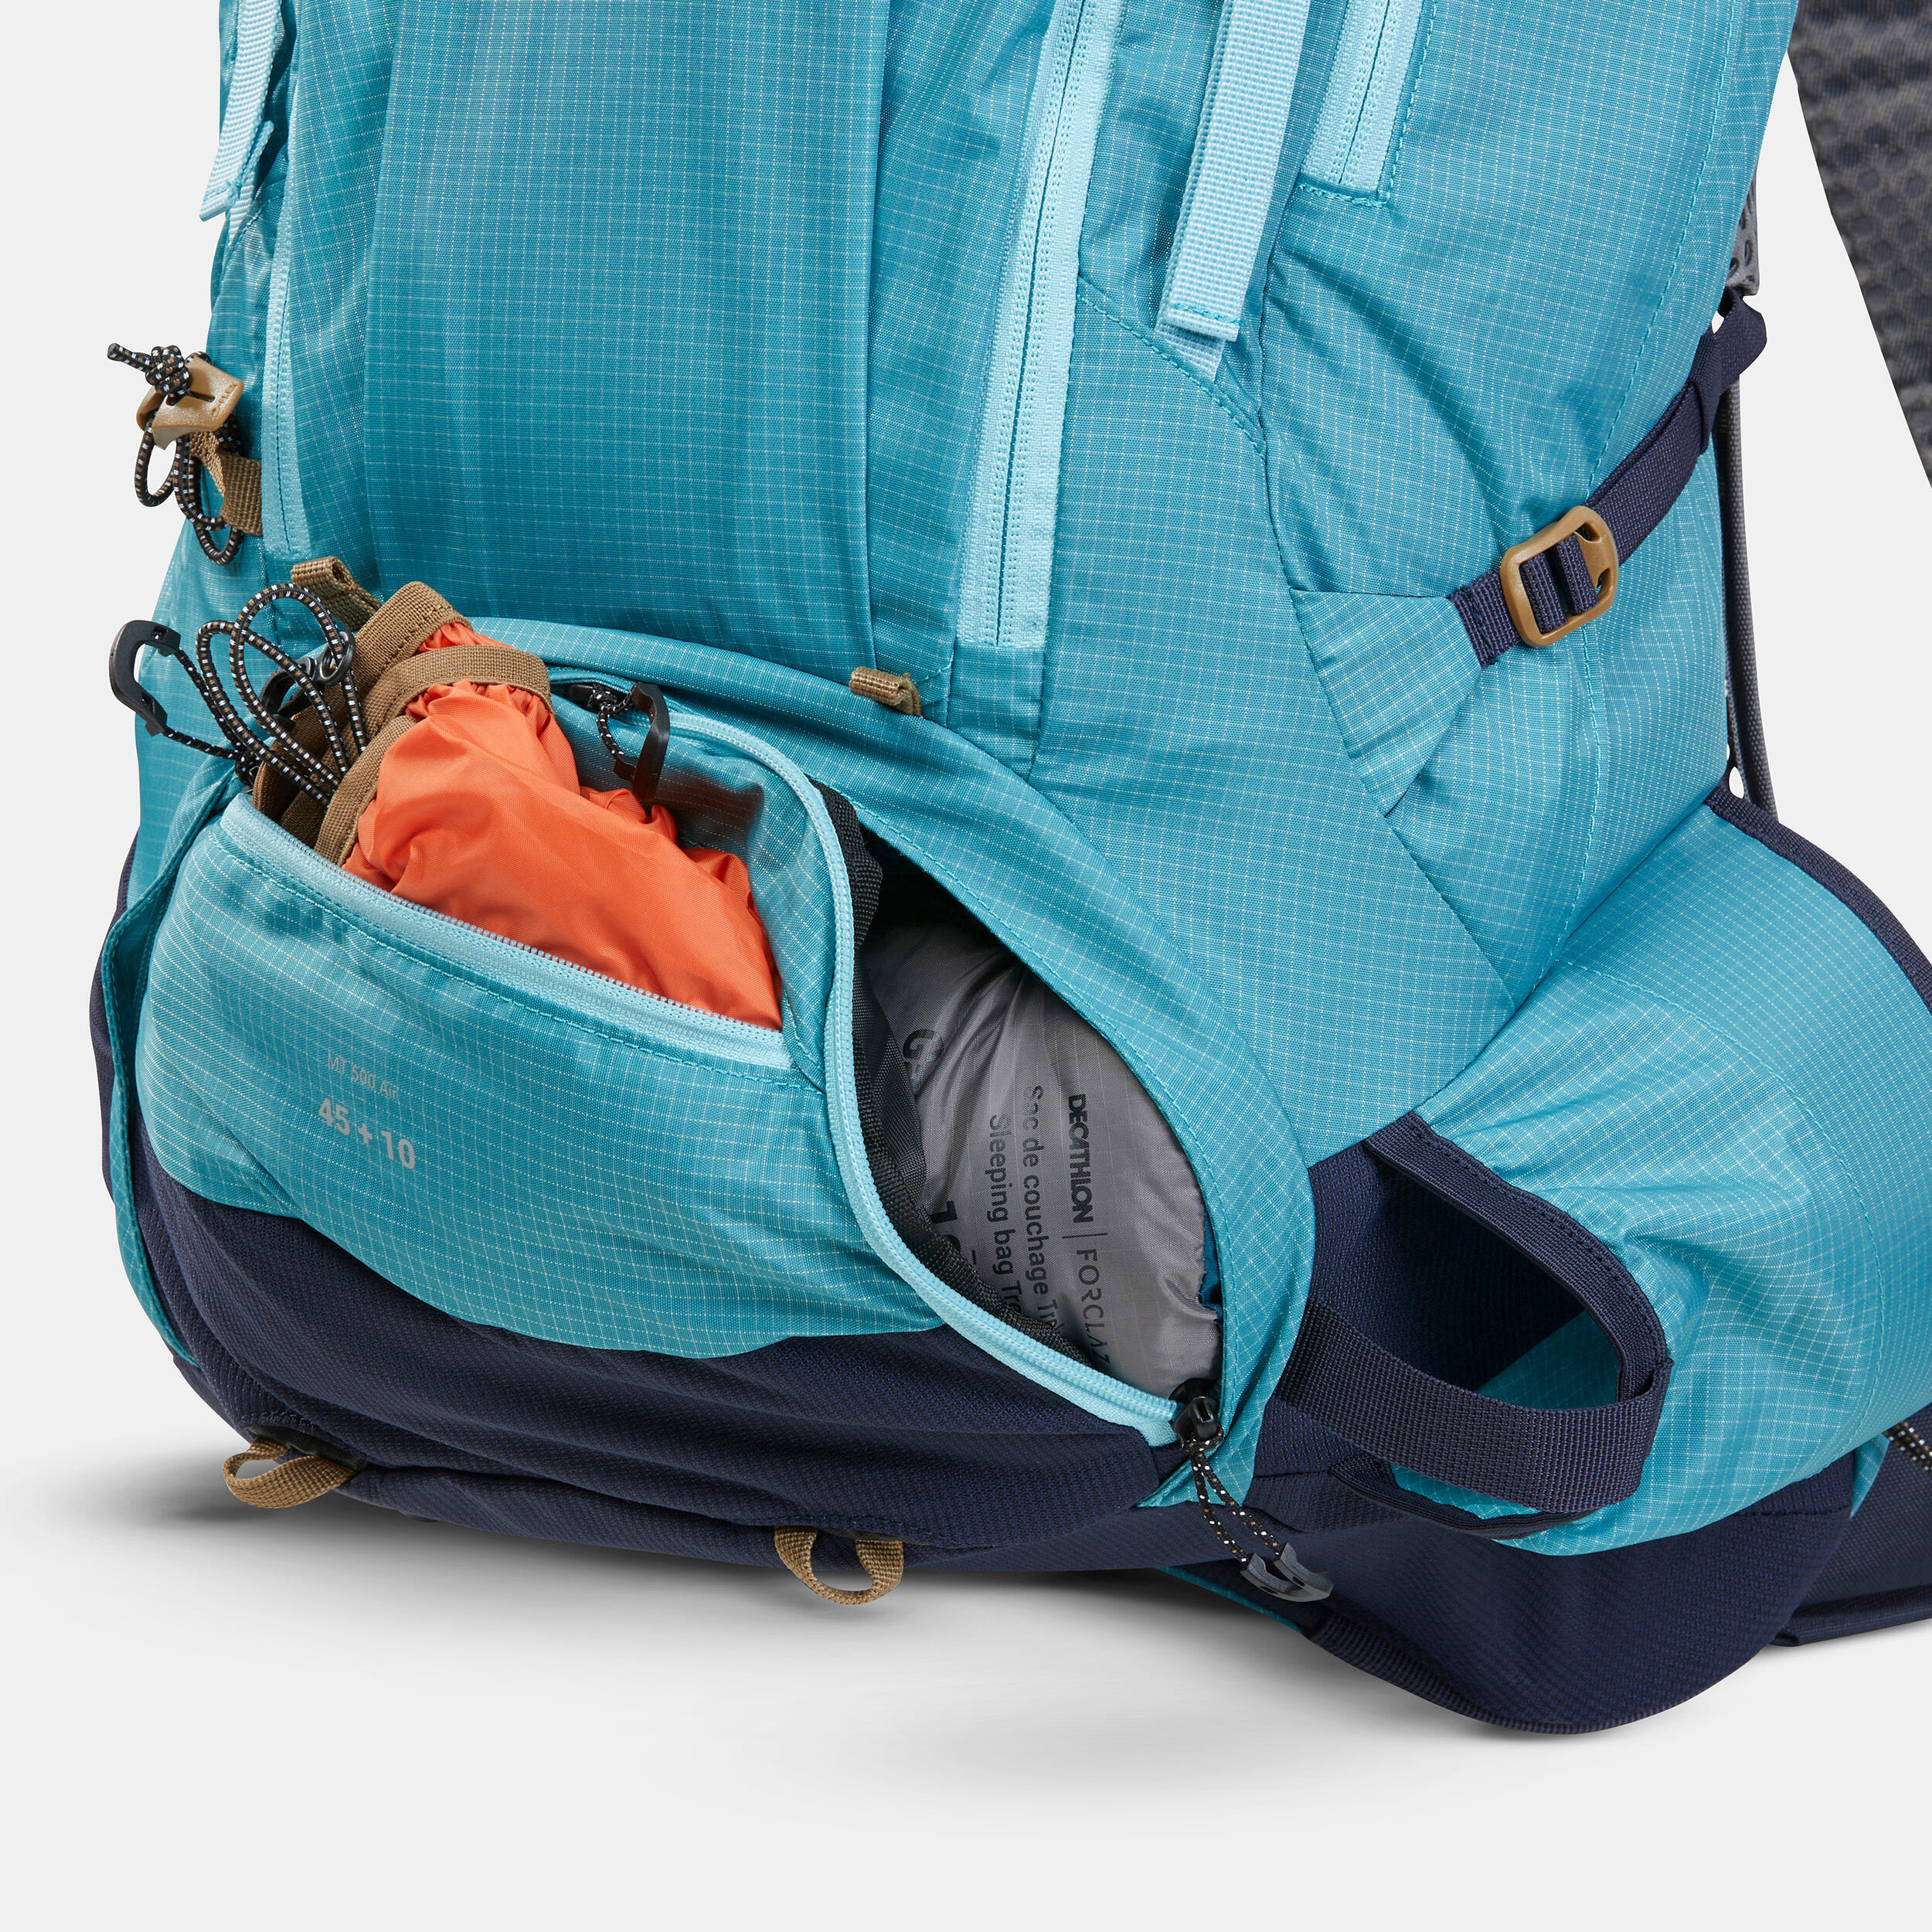 Women's Trekking Backpack 45+10 L - MT500 AIR 15/17